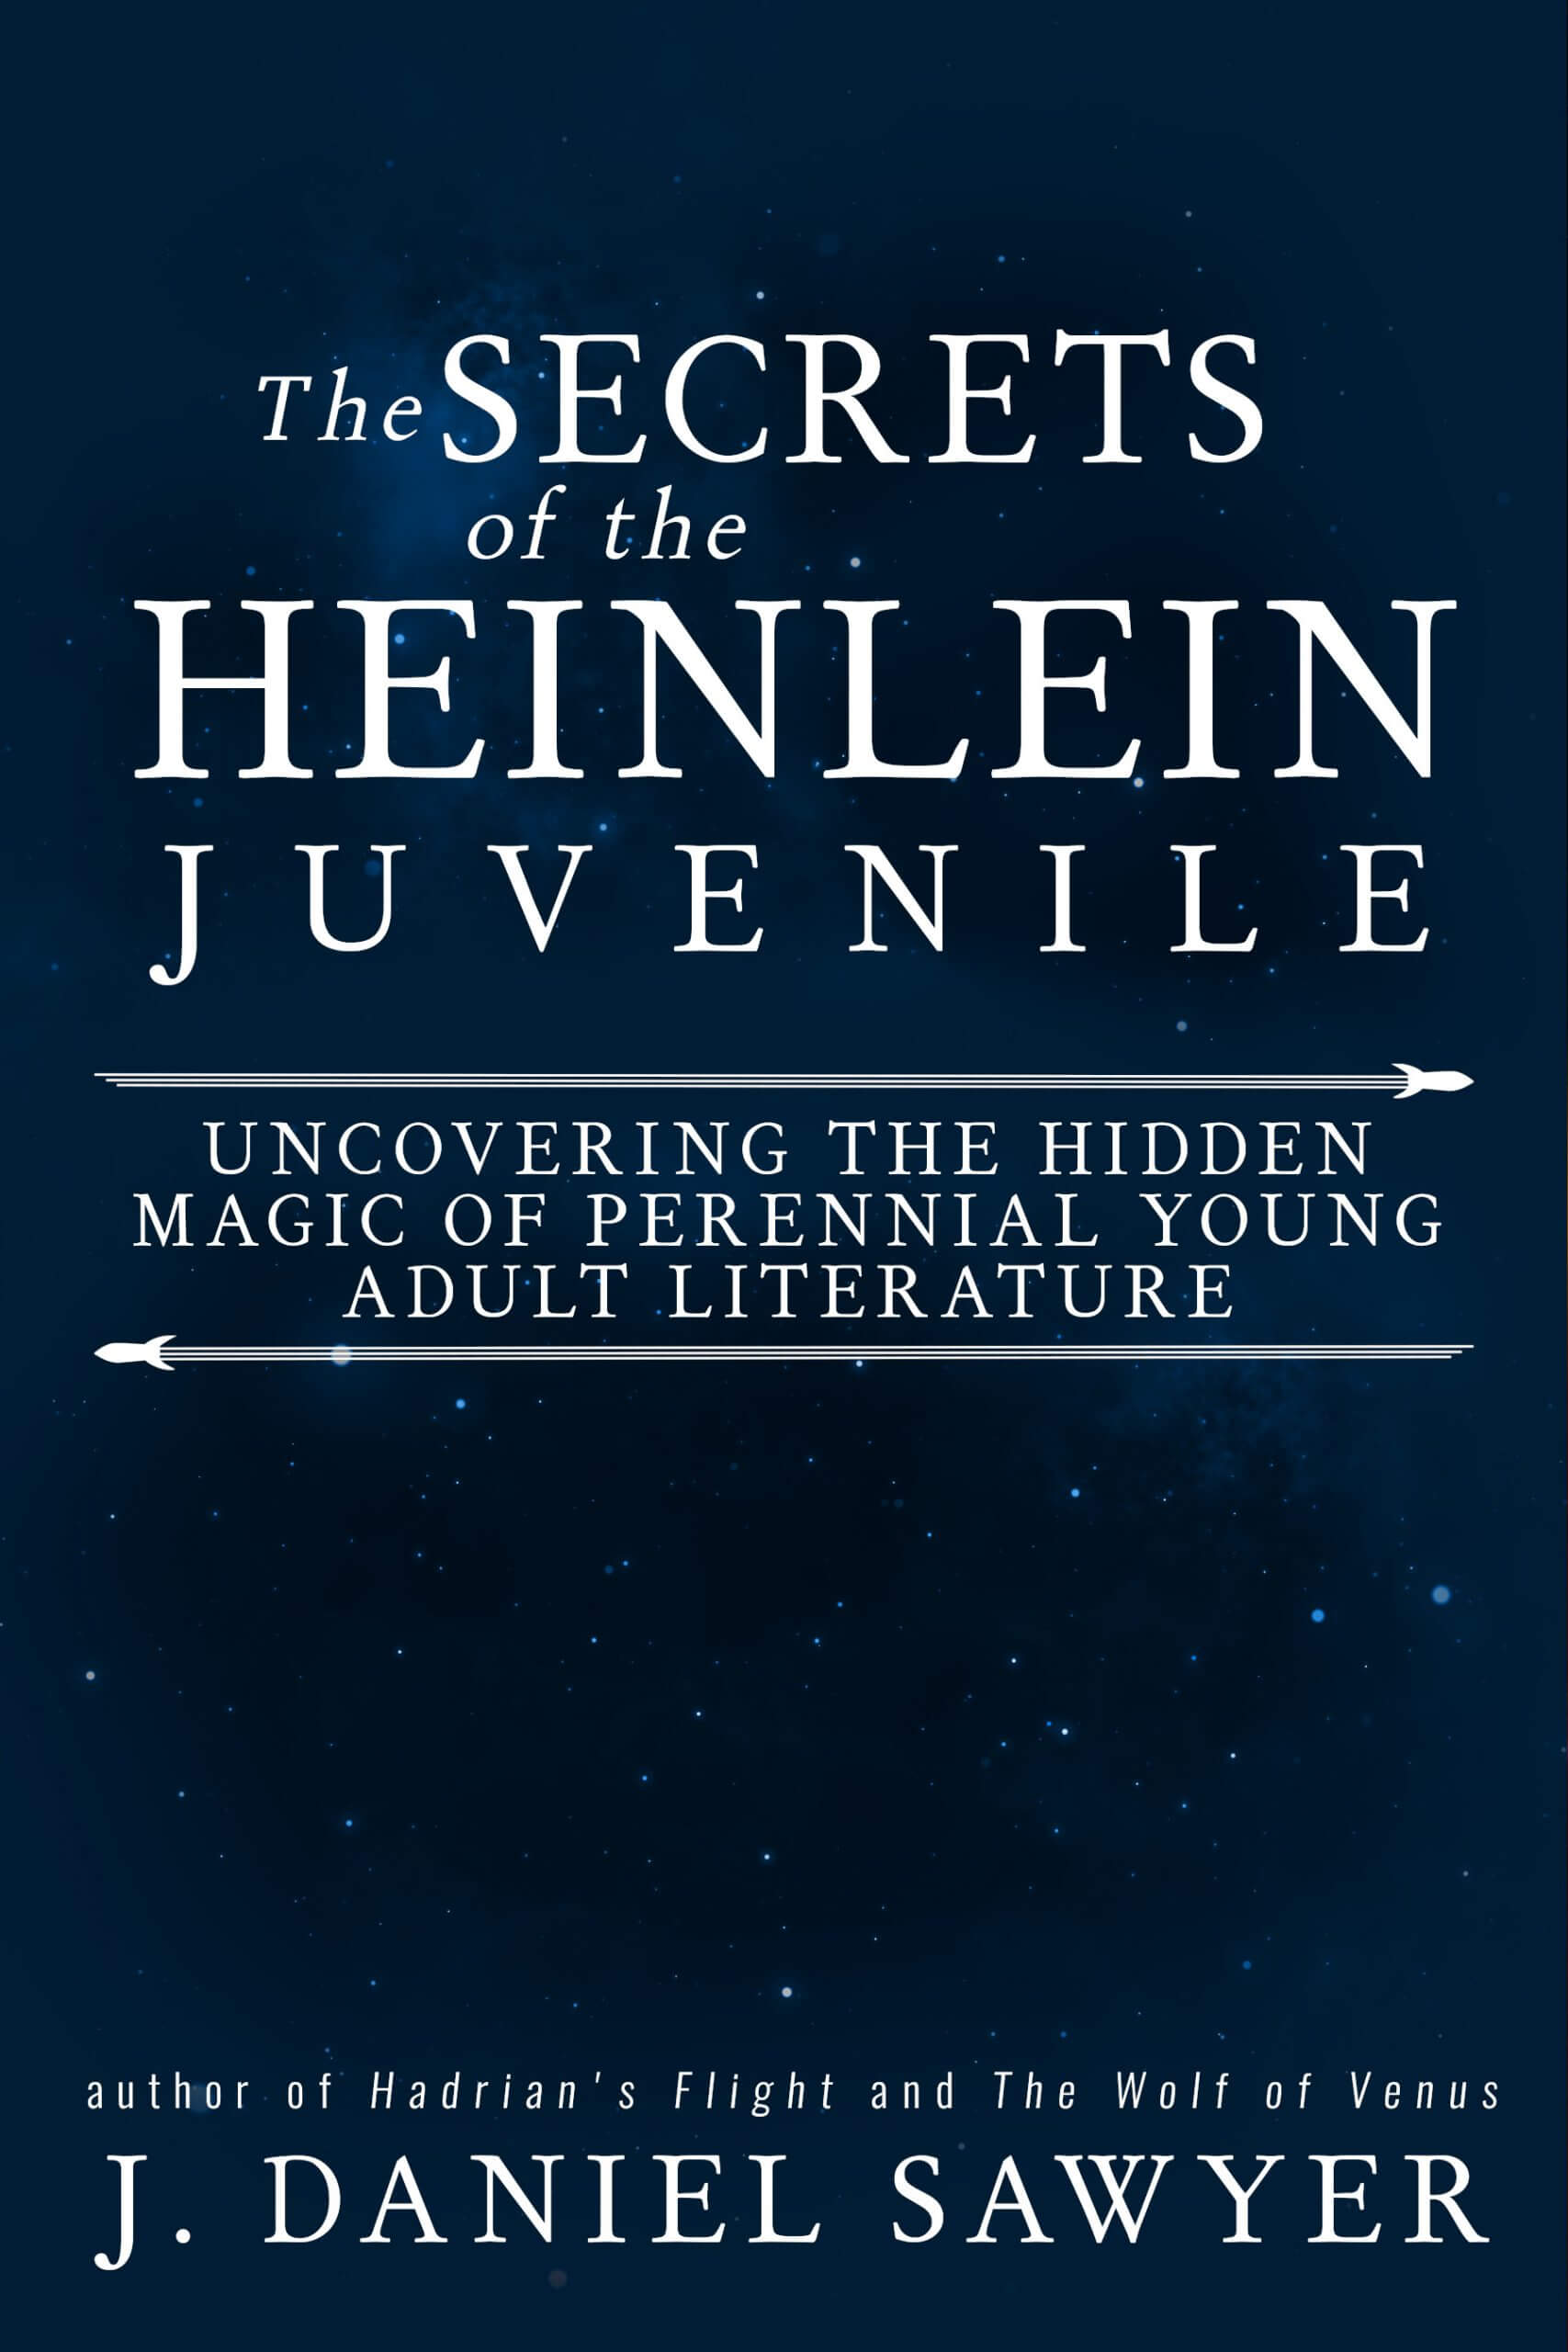 Terry Mixon and the Heinlein Juveniles